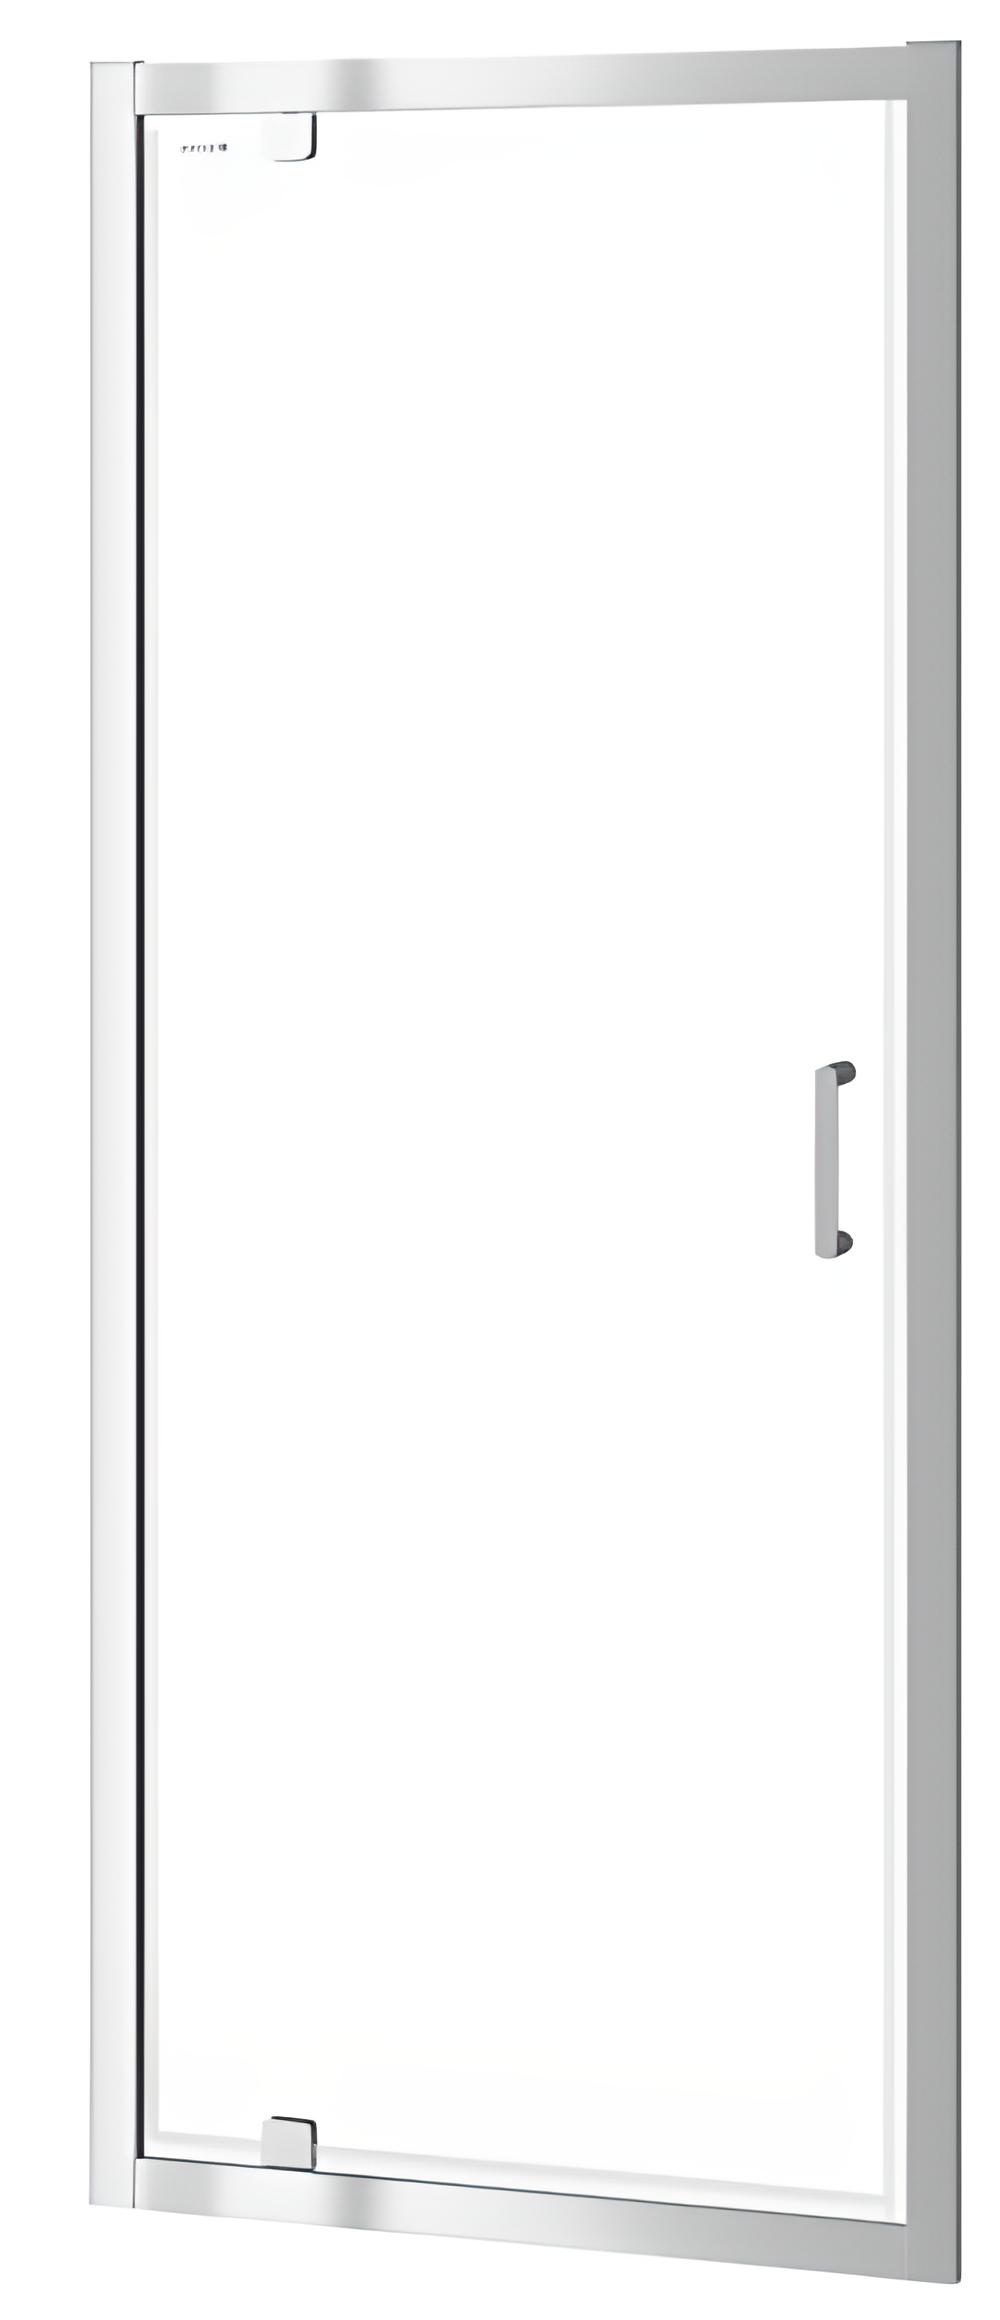 Двери душевой кабины Cersanit ZIP PIVOT 80*190 (S154-005) в интернет-магазине, главное фото